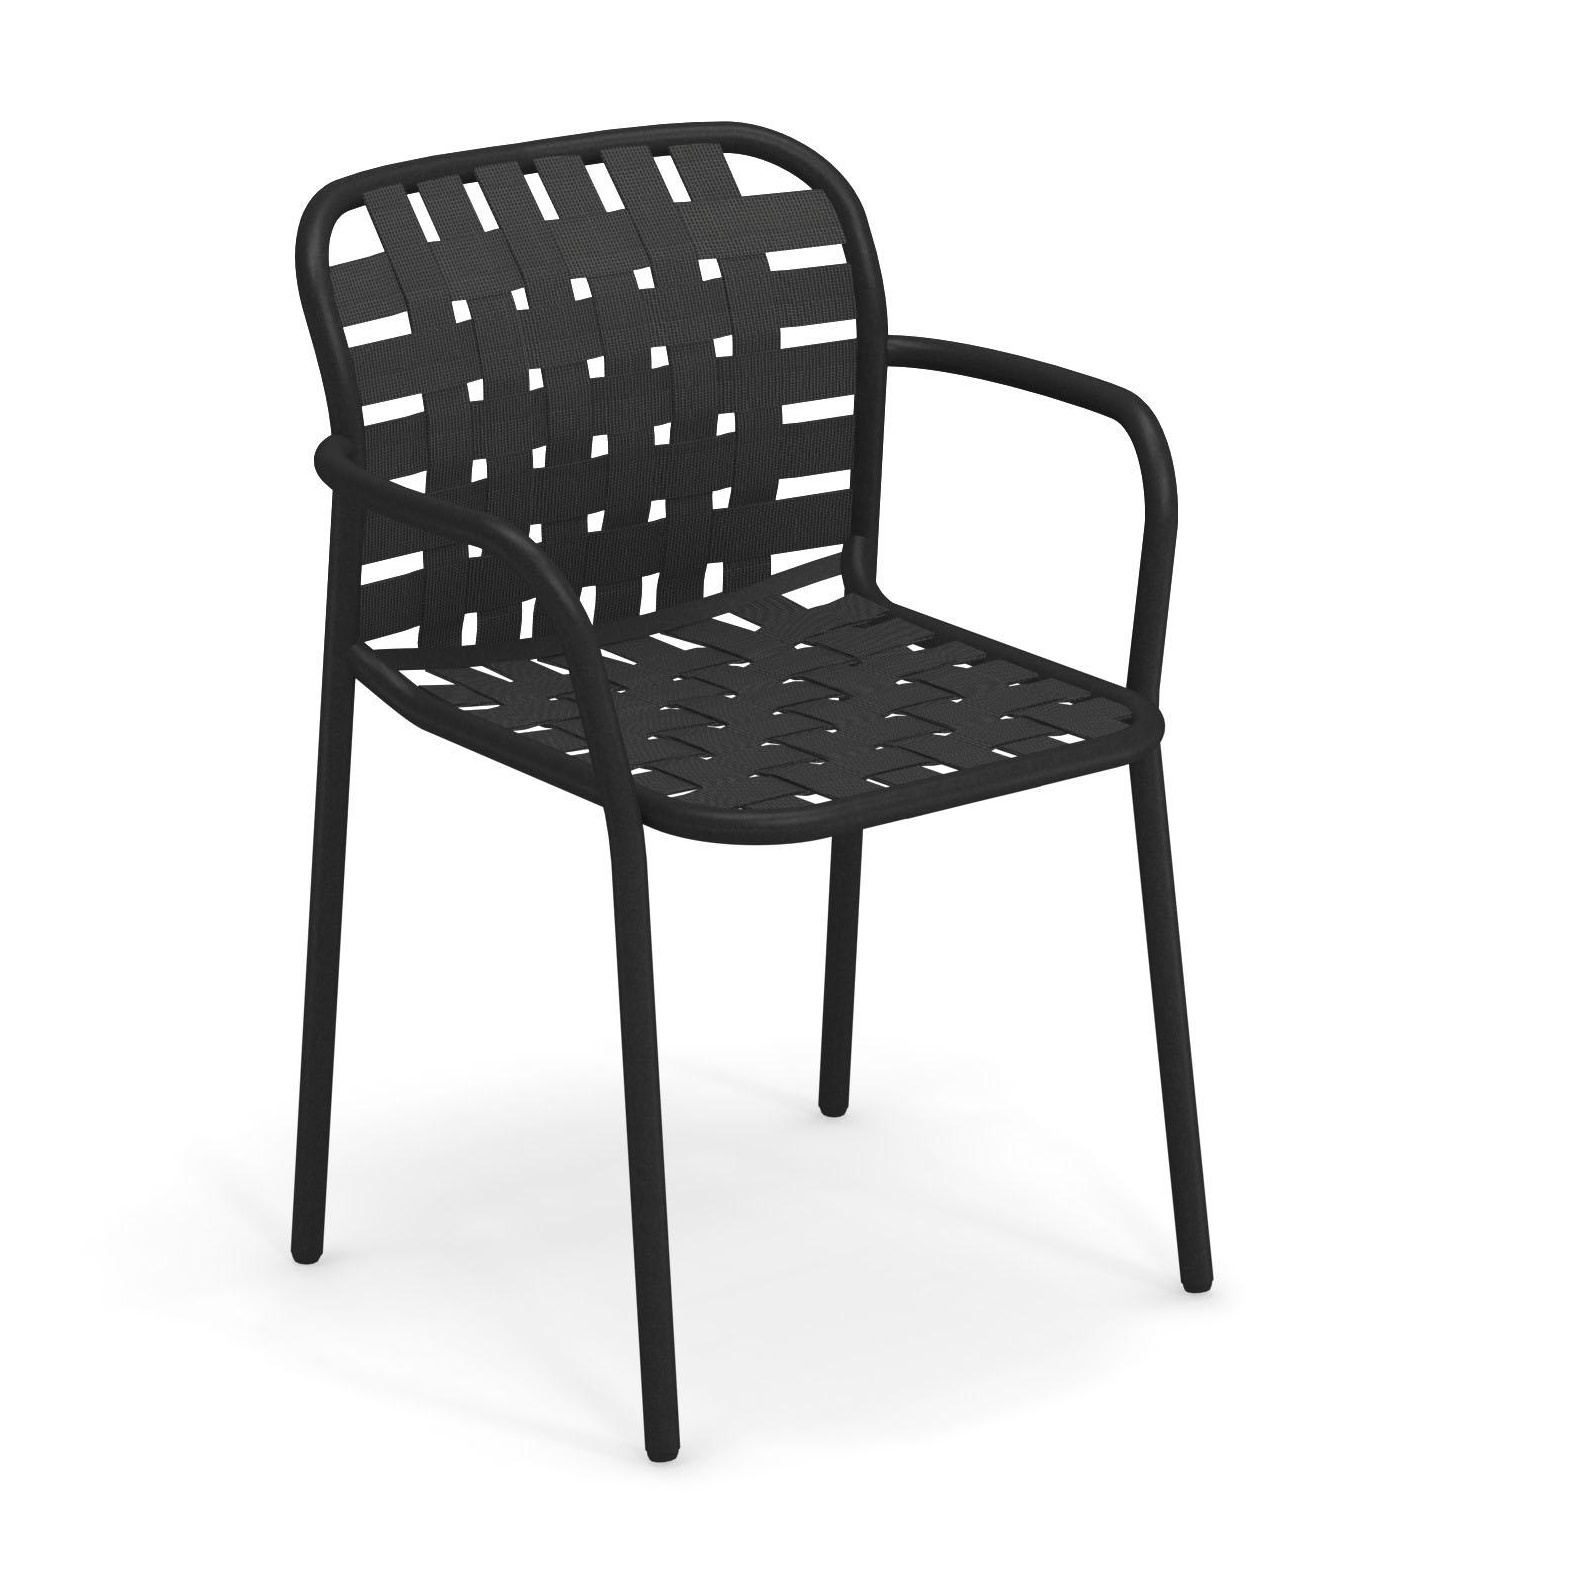 Emu - Yard Gartenarmlehnstuhl - schwarz, grauschwarz/Sitz elastische Gurte grauschwarz/BxHxT 58x81x55cm/Gestell schwarz von Emu